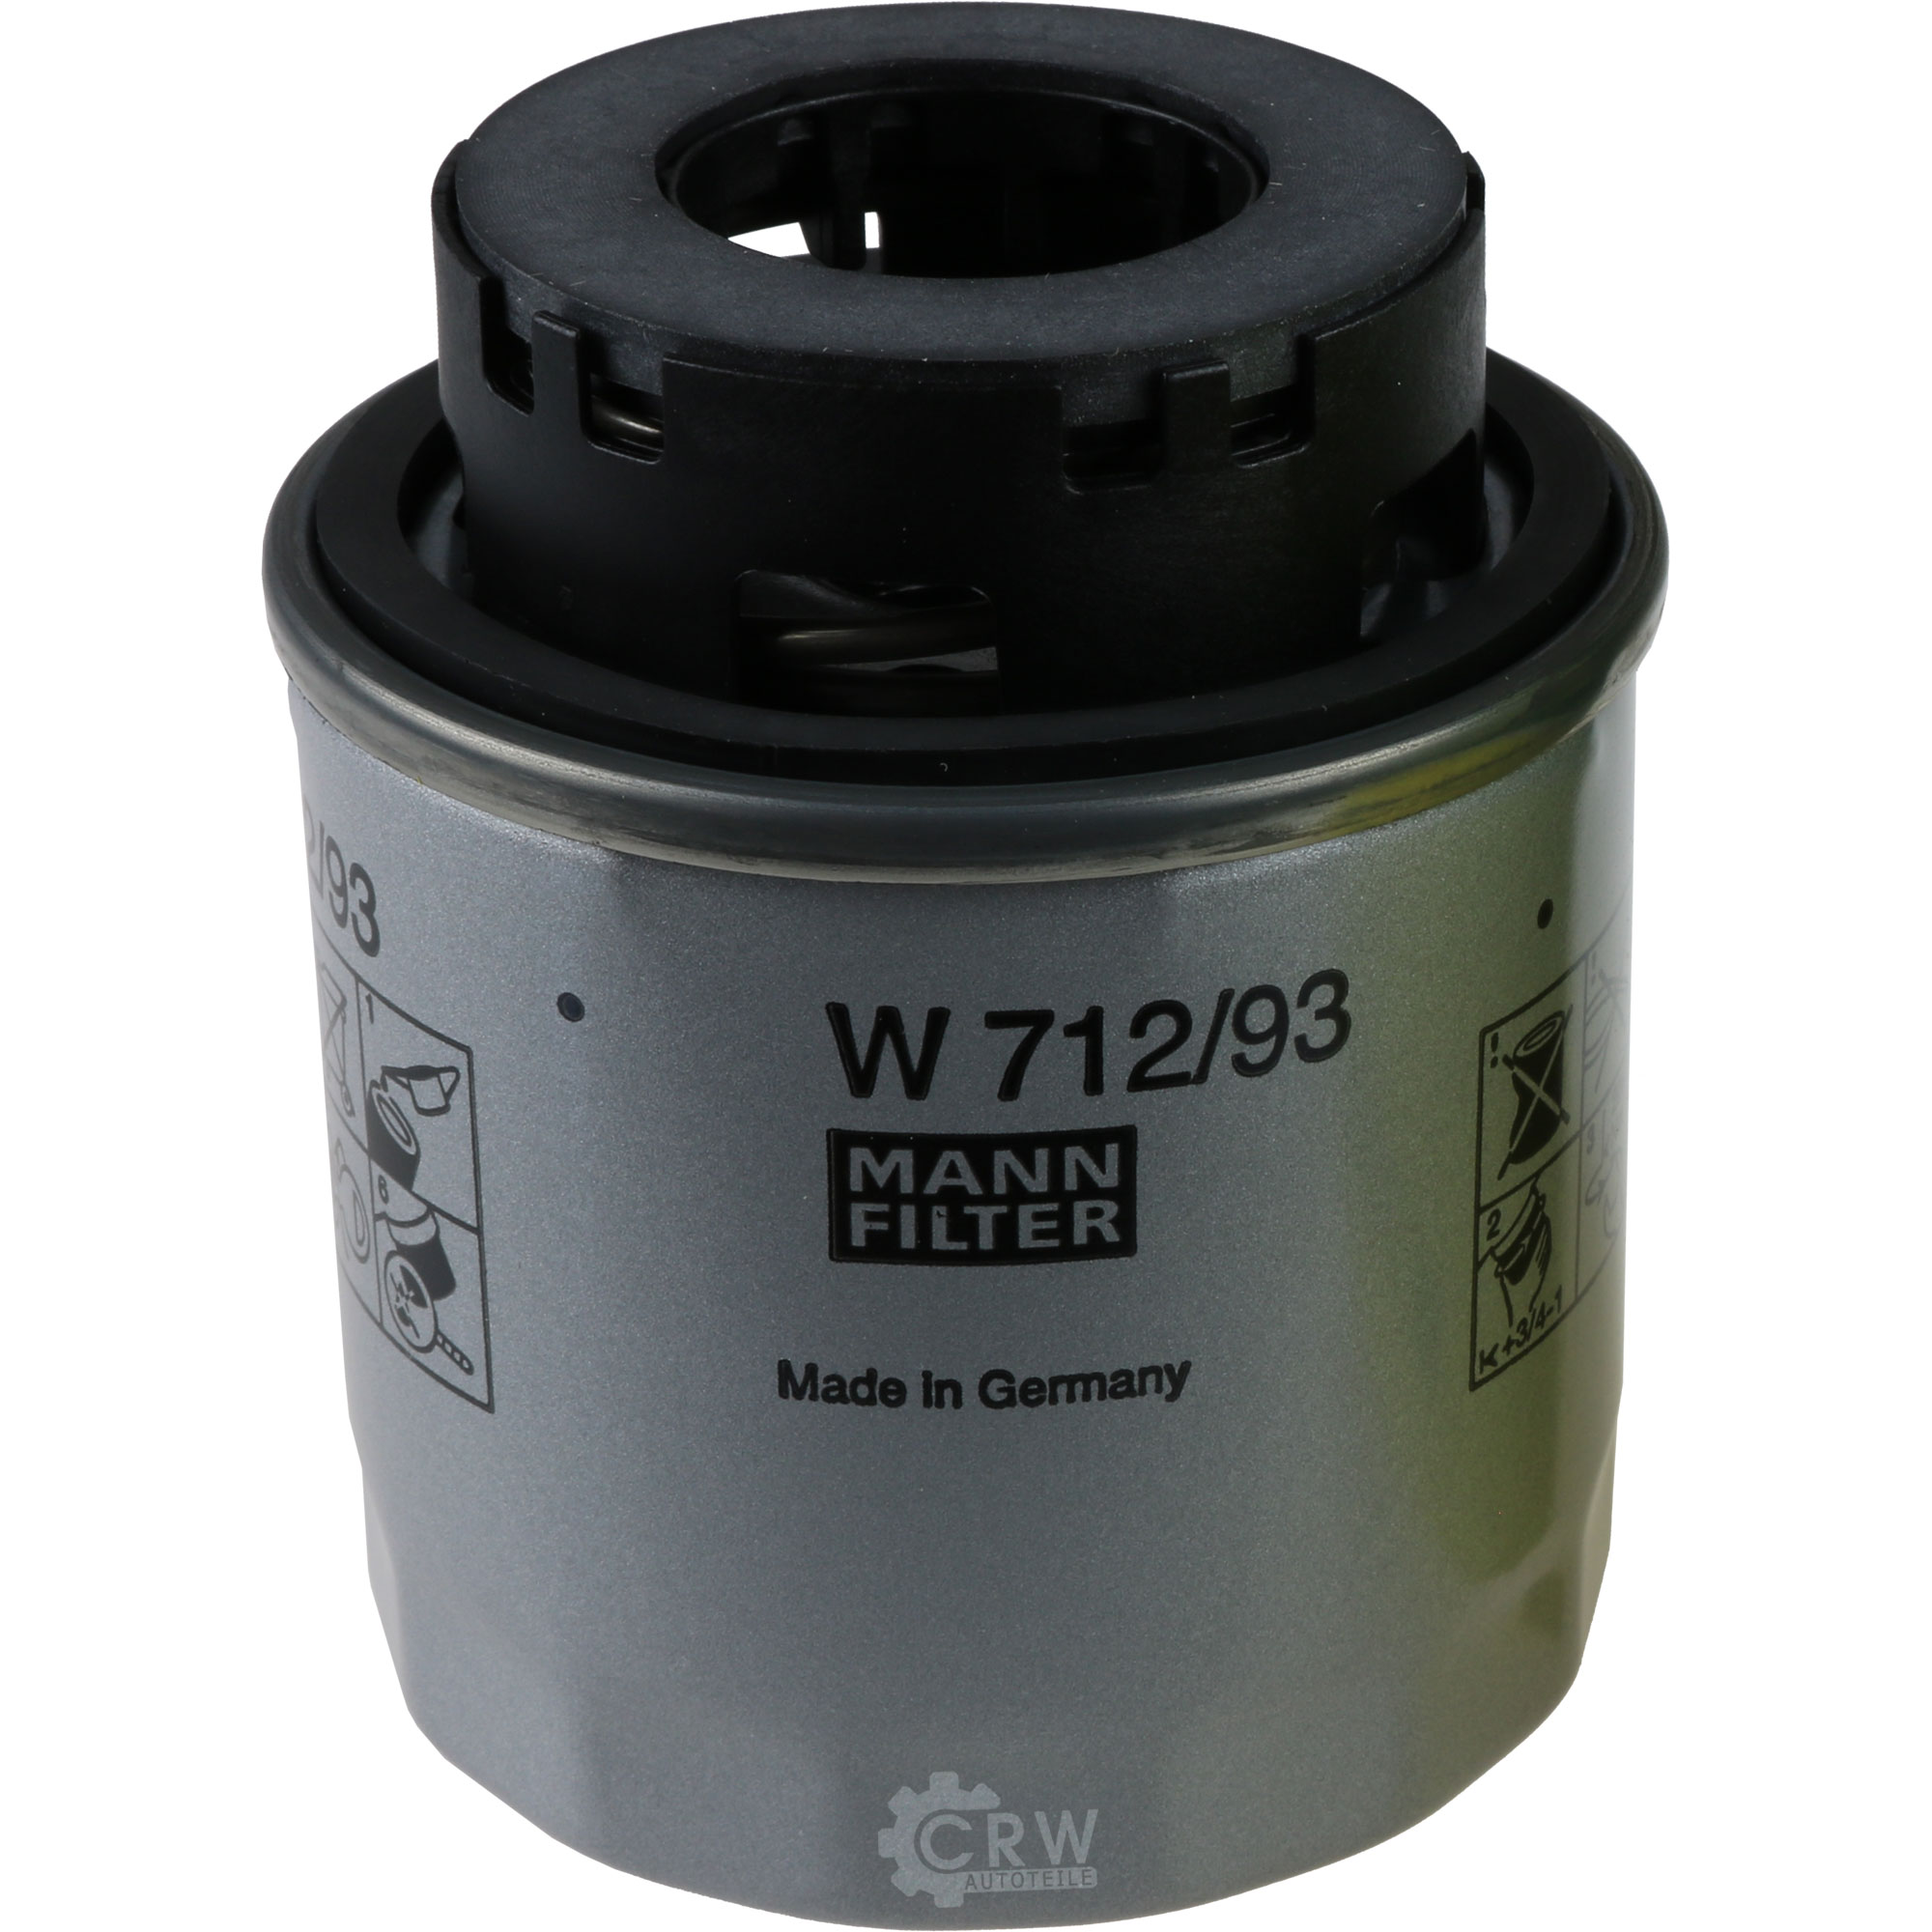 MANN-FILTER Ölfilter W 712/93 Oil Filter